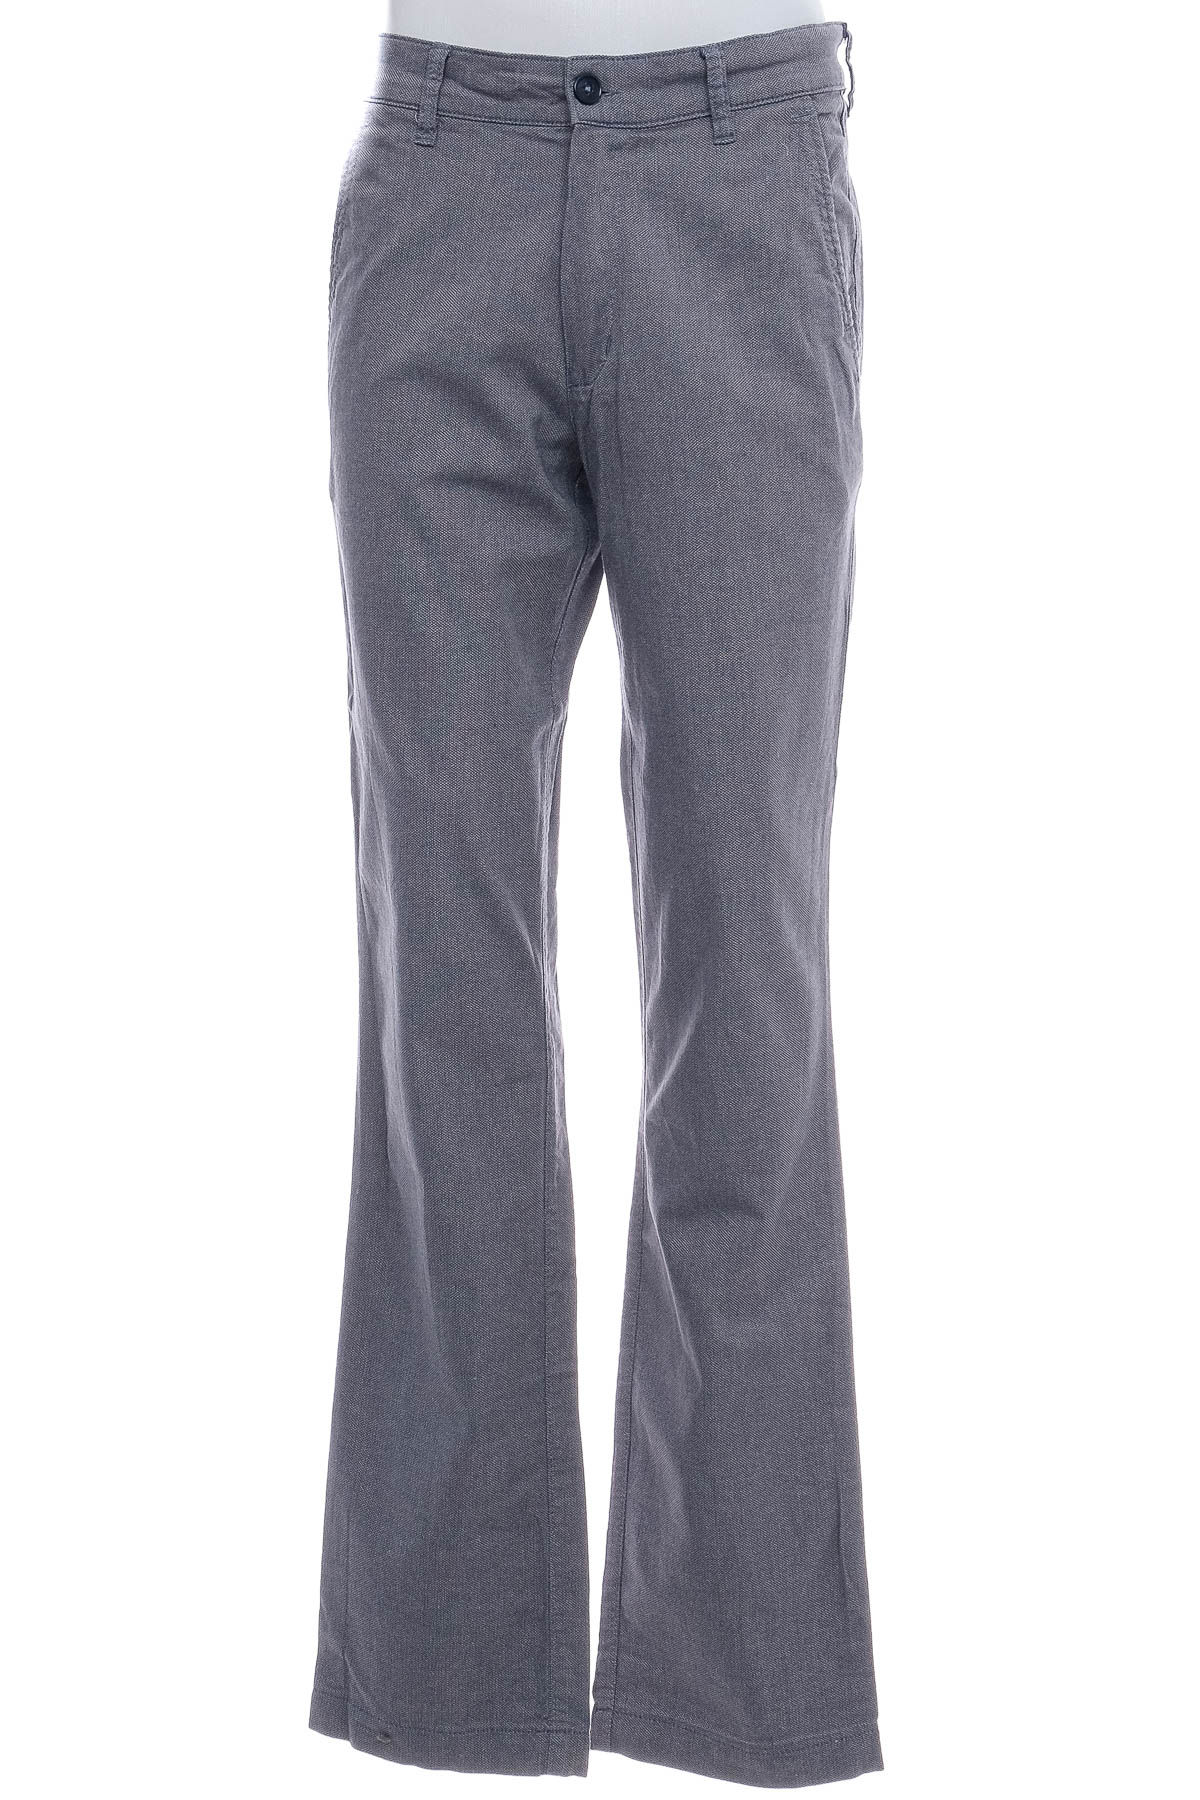 Men's trousers - UVR - 0